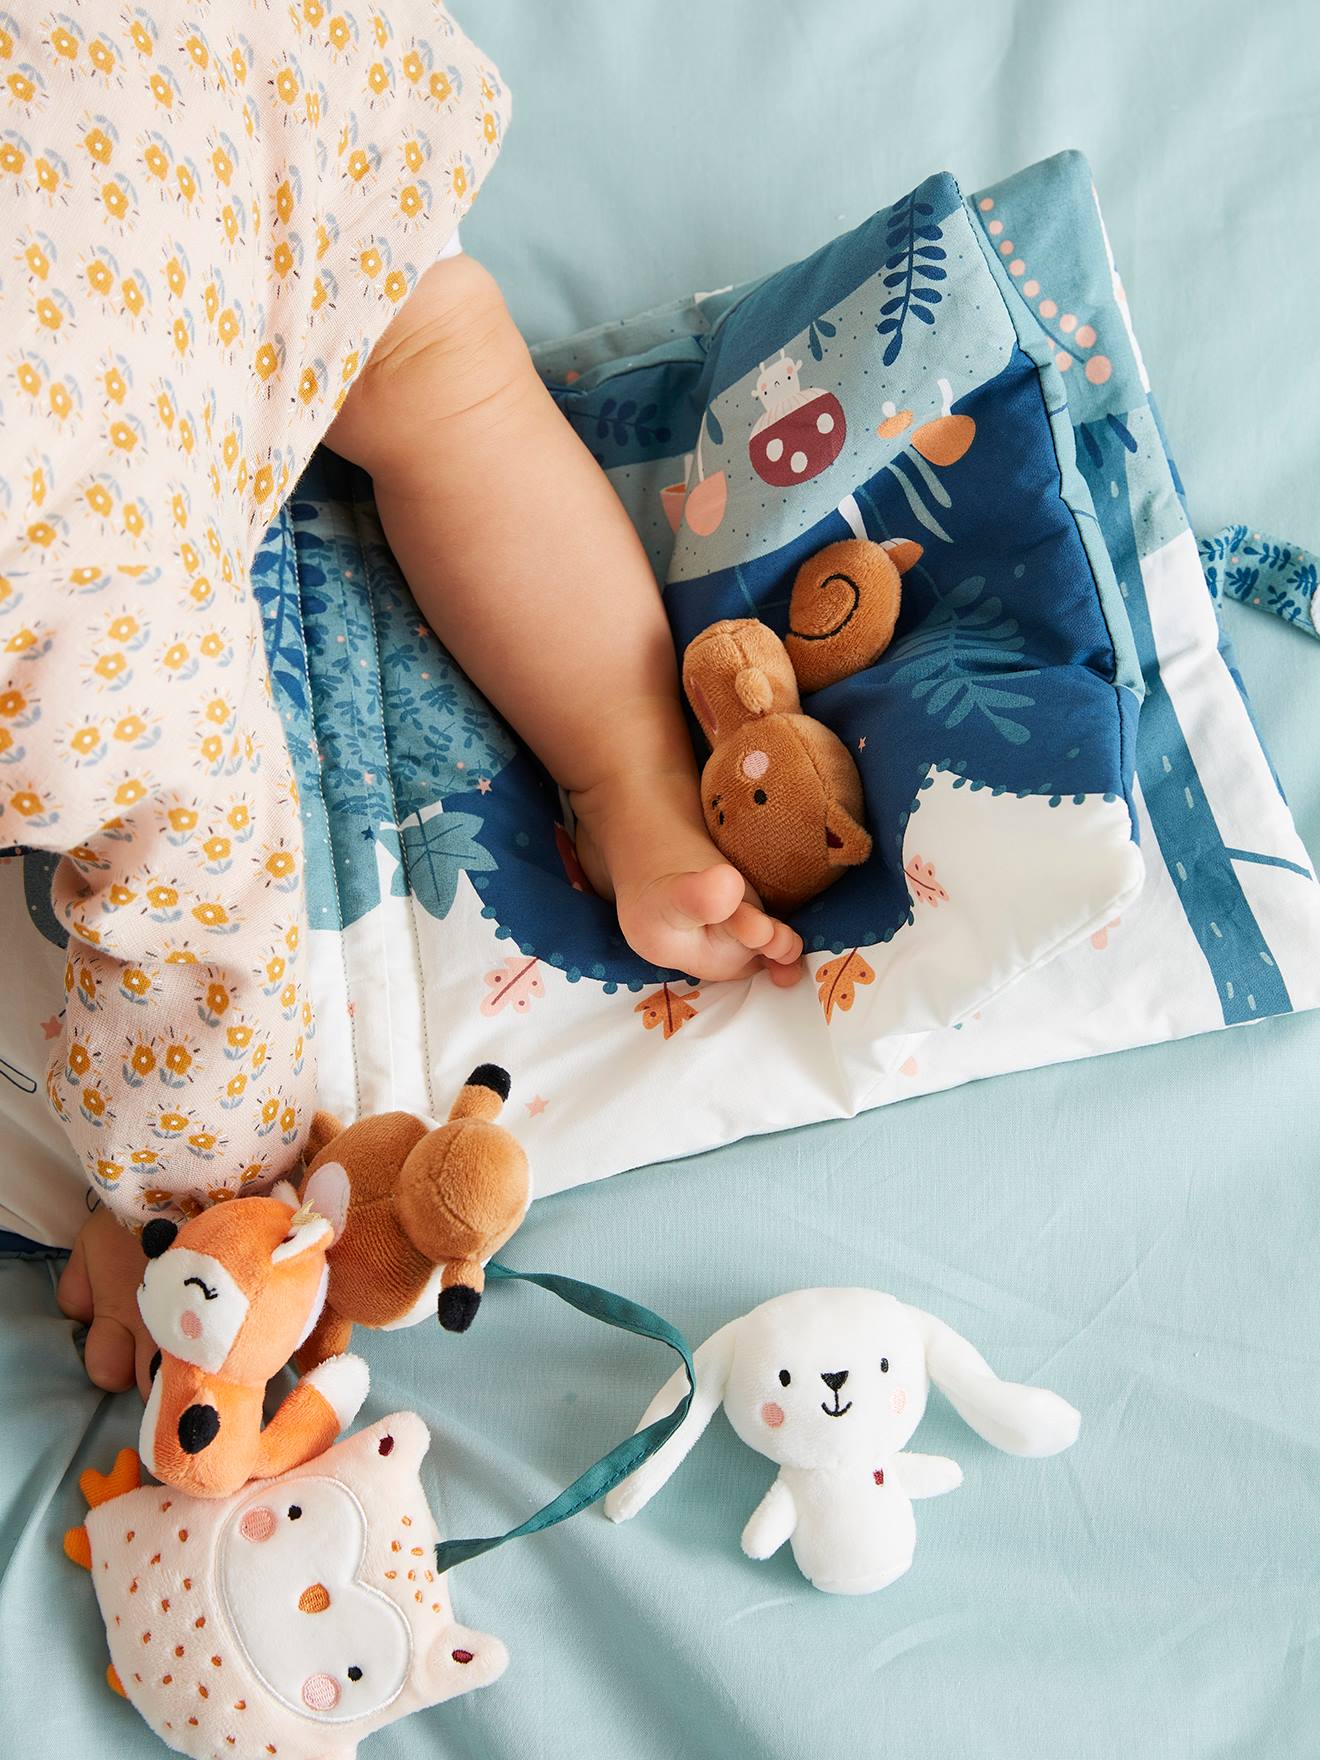 Kind Baby Versteck spiel Teddybär Puppen Sonstige Plüsch Stofftiere Geschenk Neu 